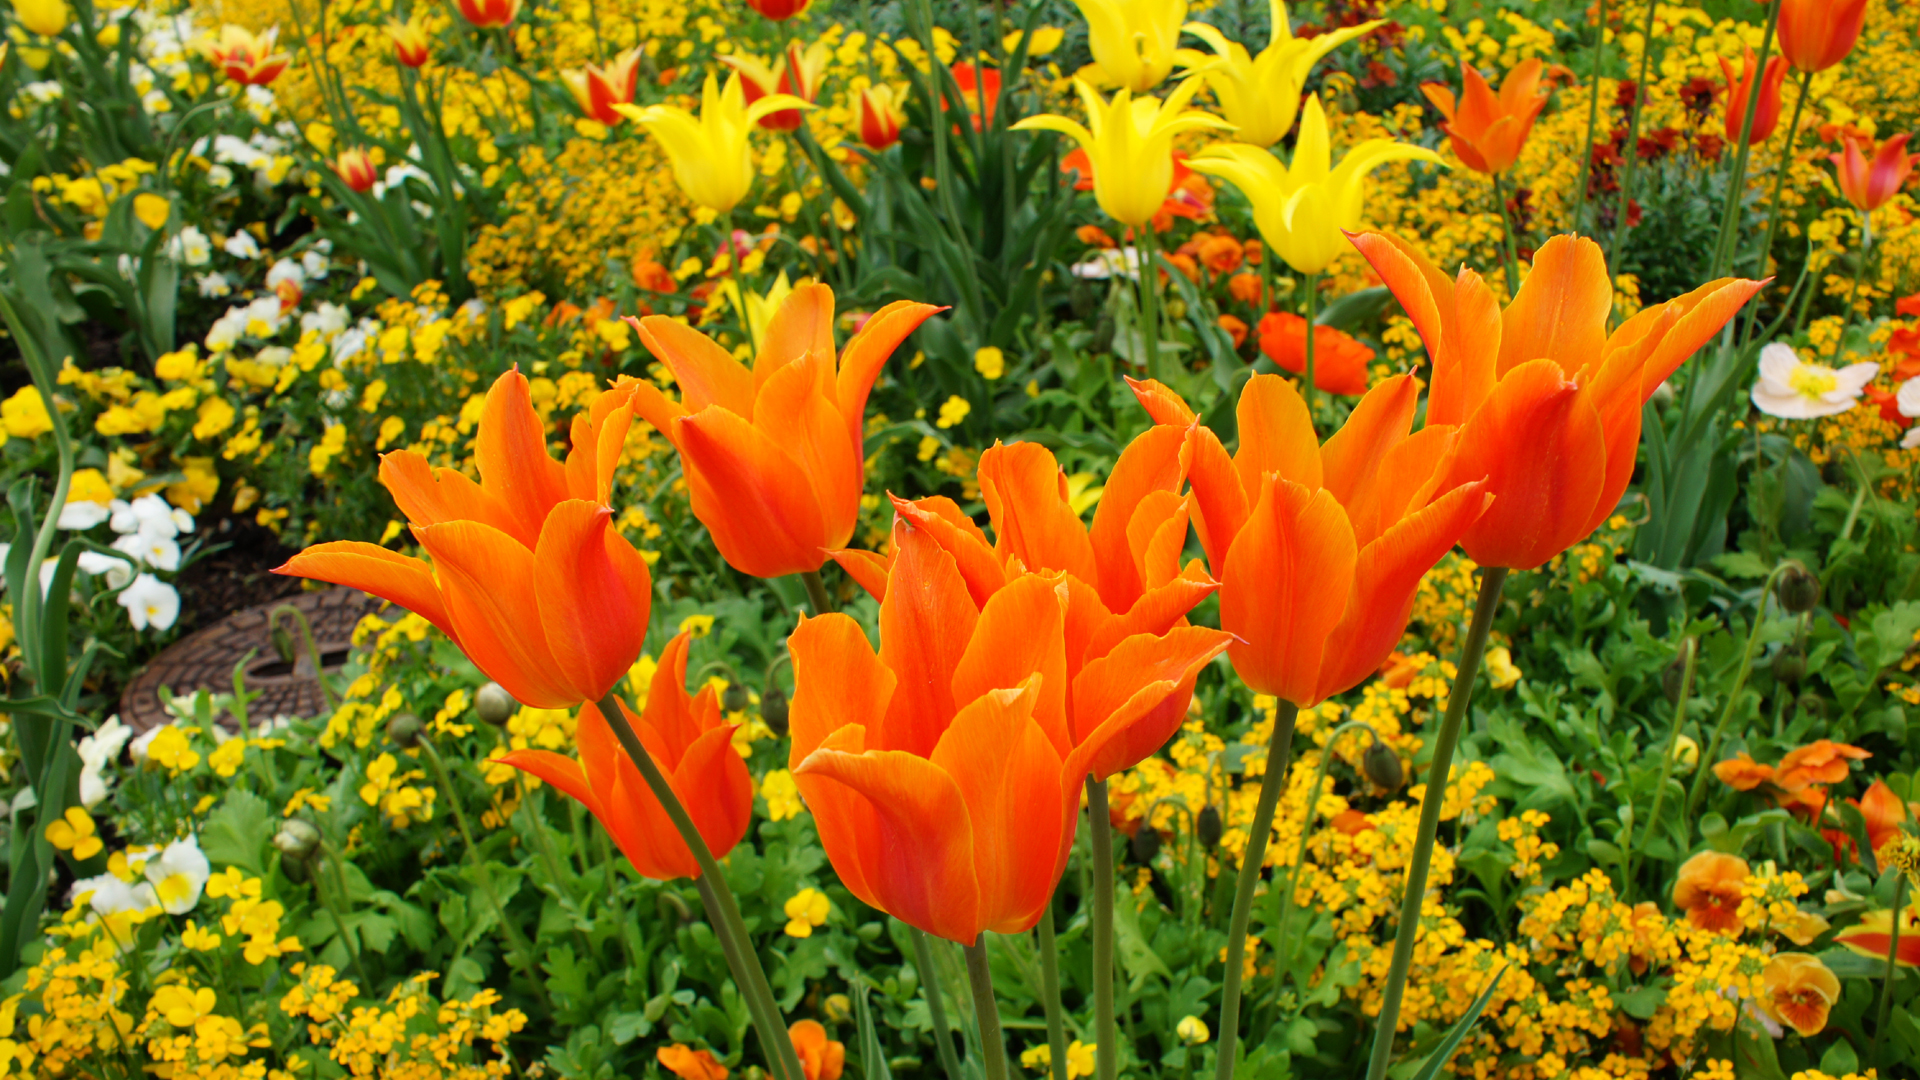 Fotostrecke Frühling Abbildung 03: Tulpen